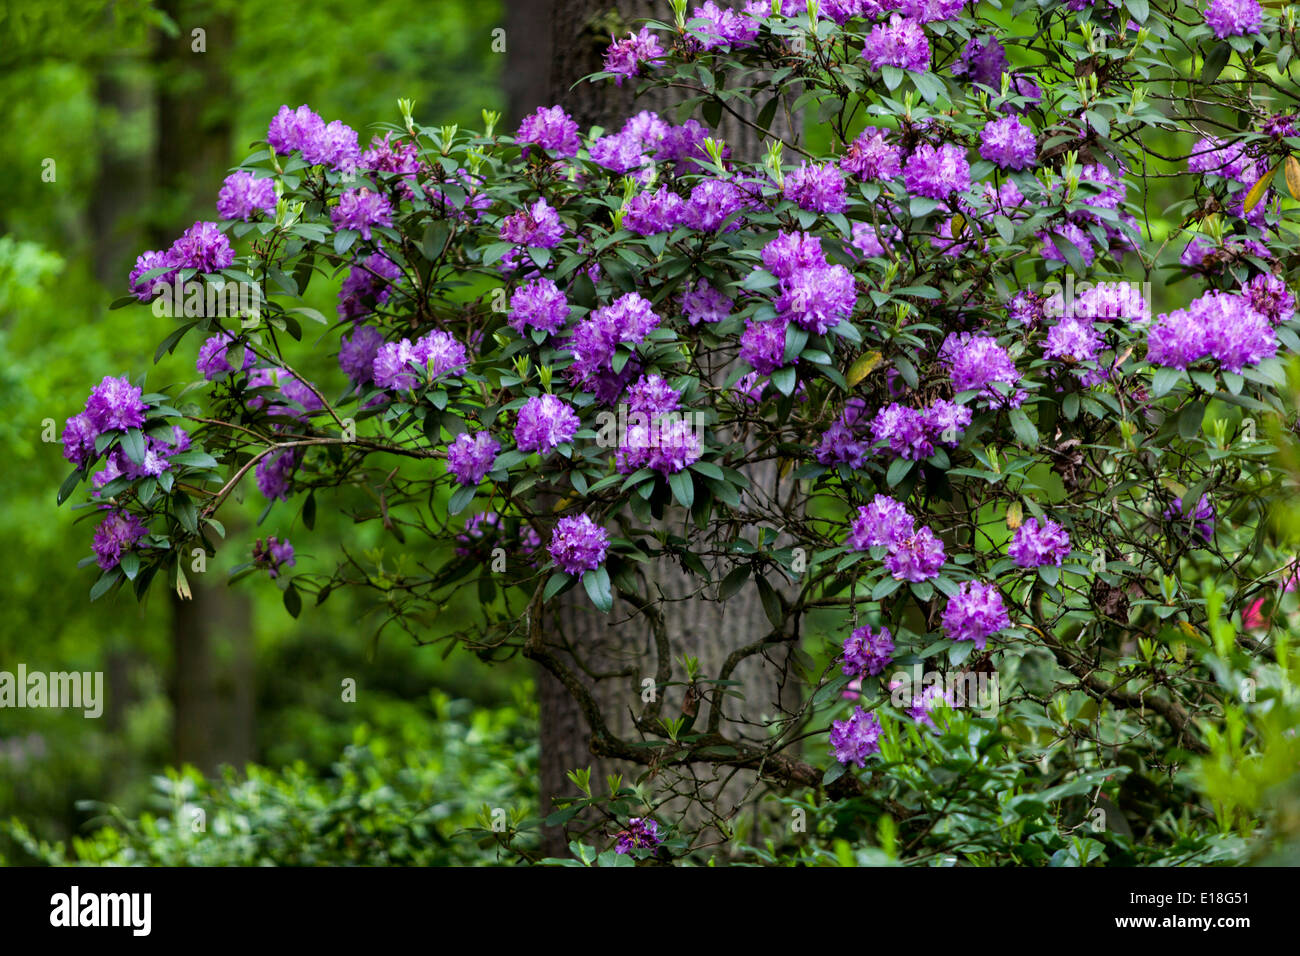 Rhododendron, Blumen, Garten, Blüte, Sträucher, Wald, unter Bäumen, Blau, Wald, Rhododendrons Garten Stockfoto